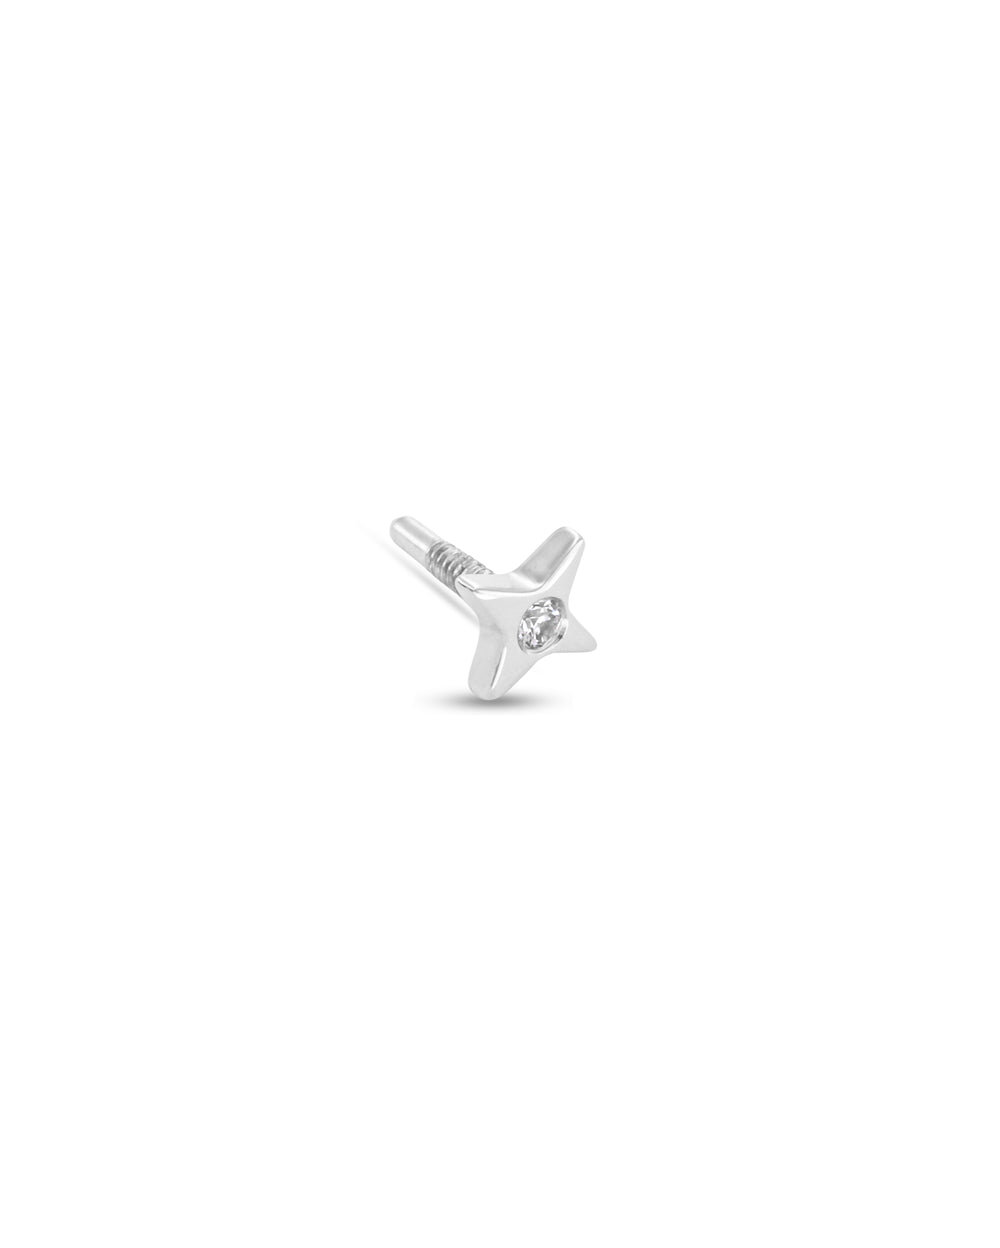 Covetear Starlight Diamond Cartilage Earring#material_14k_White_Gold